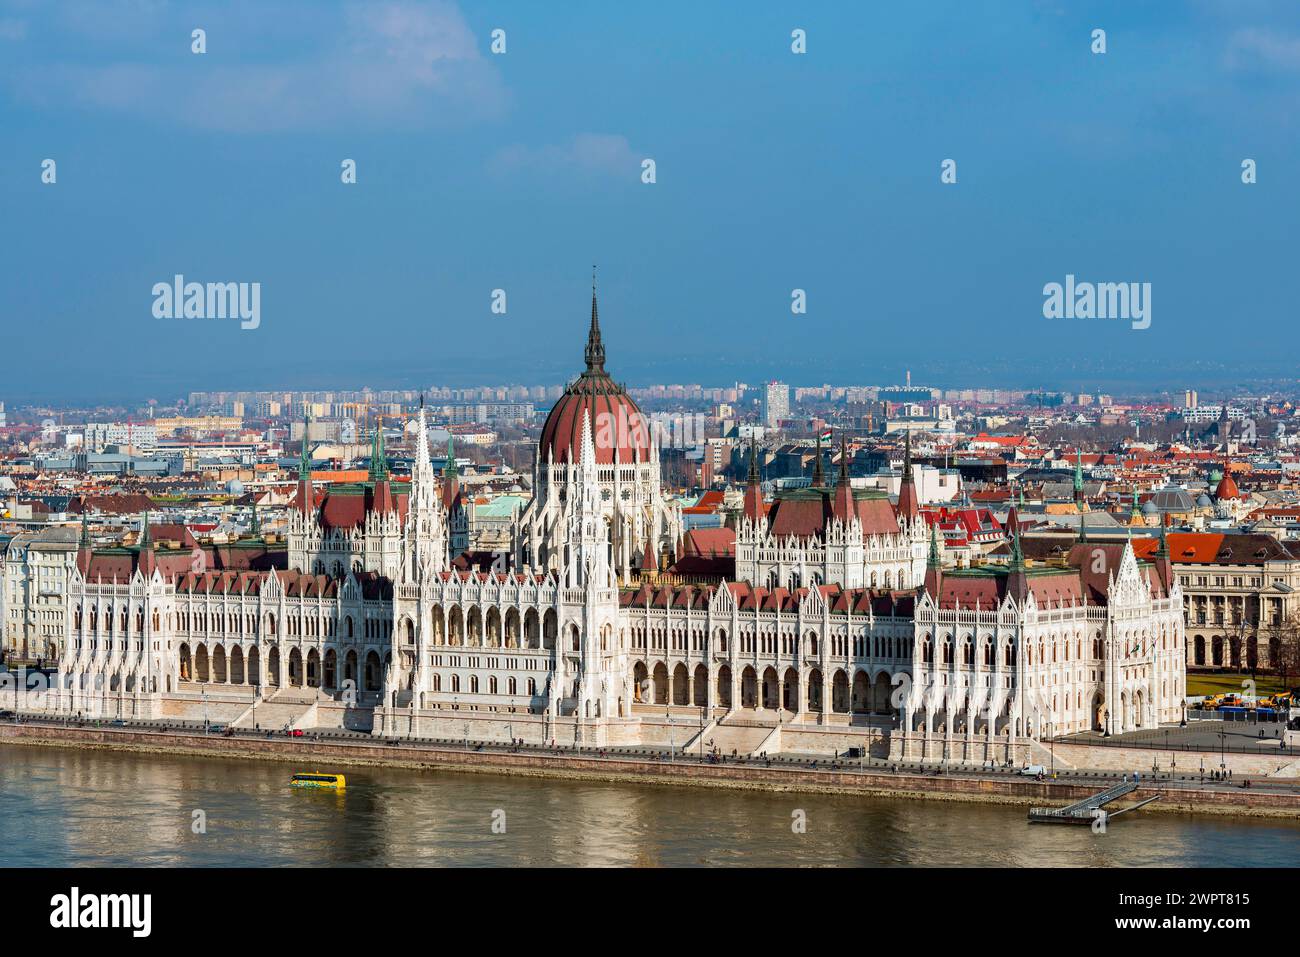 Die Donau und das Parlament, Politik, Stadtblick, Reisen, Städtereise, Tourismus, Übersicht, Osteuropa, Architektur, Gebäude, Attraktion Stockfoto